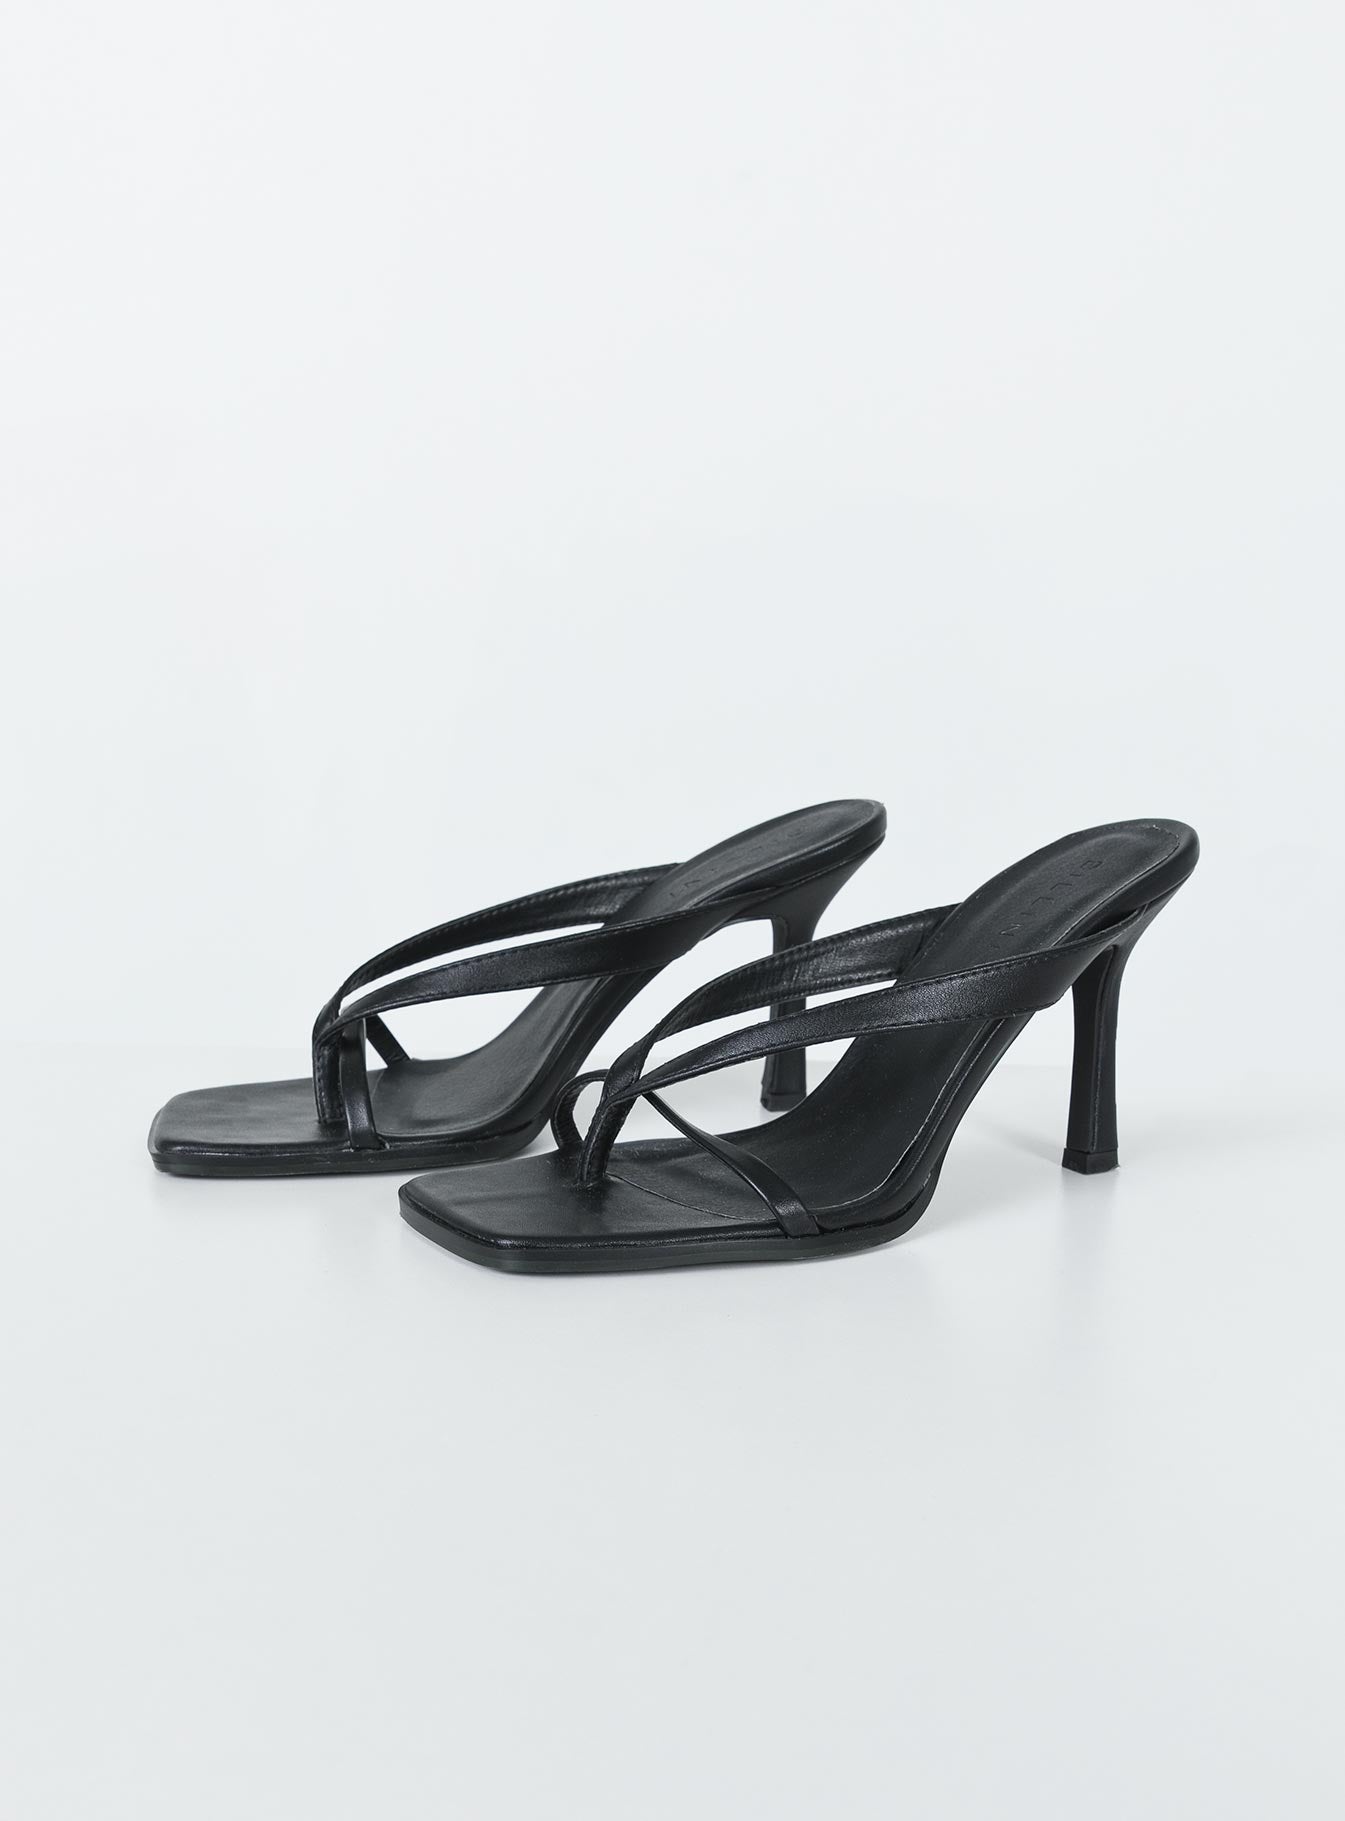 19322F ZARA Strappy Velvet Sandals Sizes: 35 36 37 38 39 40 41 Price: MVR  1020 Description: High-heel velvet sandals. Thin criss-cross… | Instagram